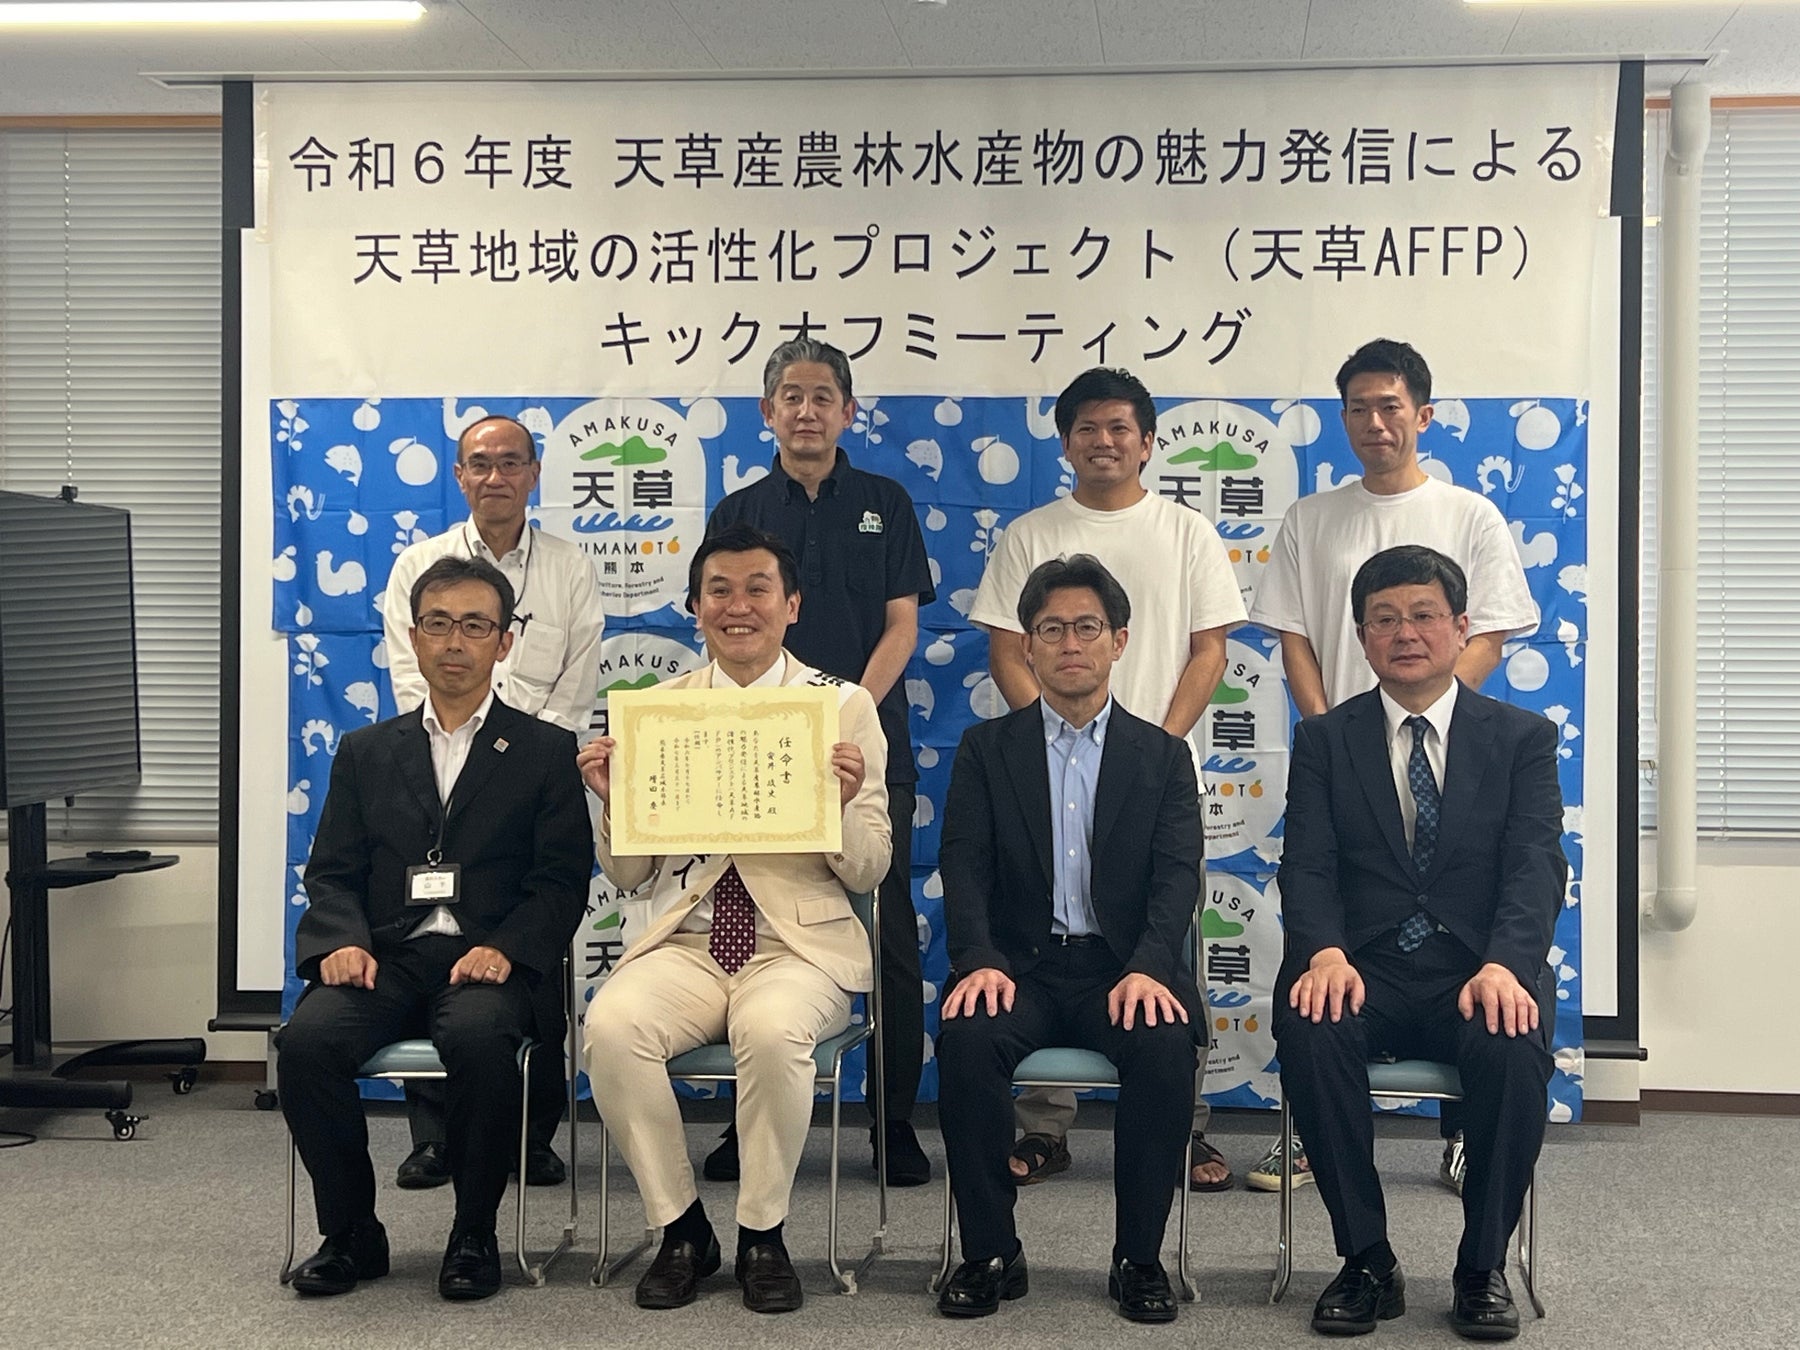 熊本県住みます芸人 安井政史が、天草地域を活性化するプロジェクト「天草AFFP」のアンバサダーに就任‼